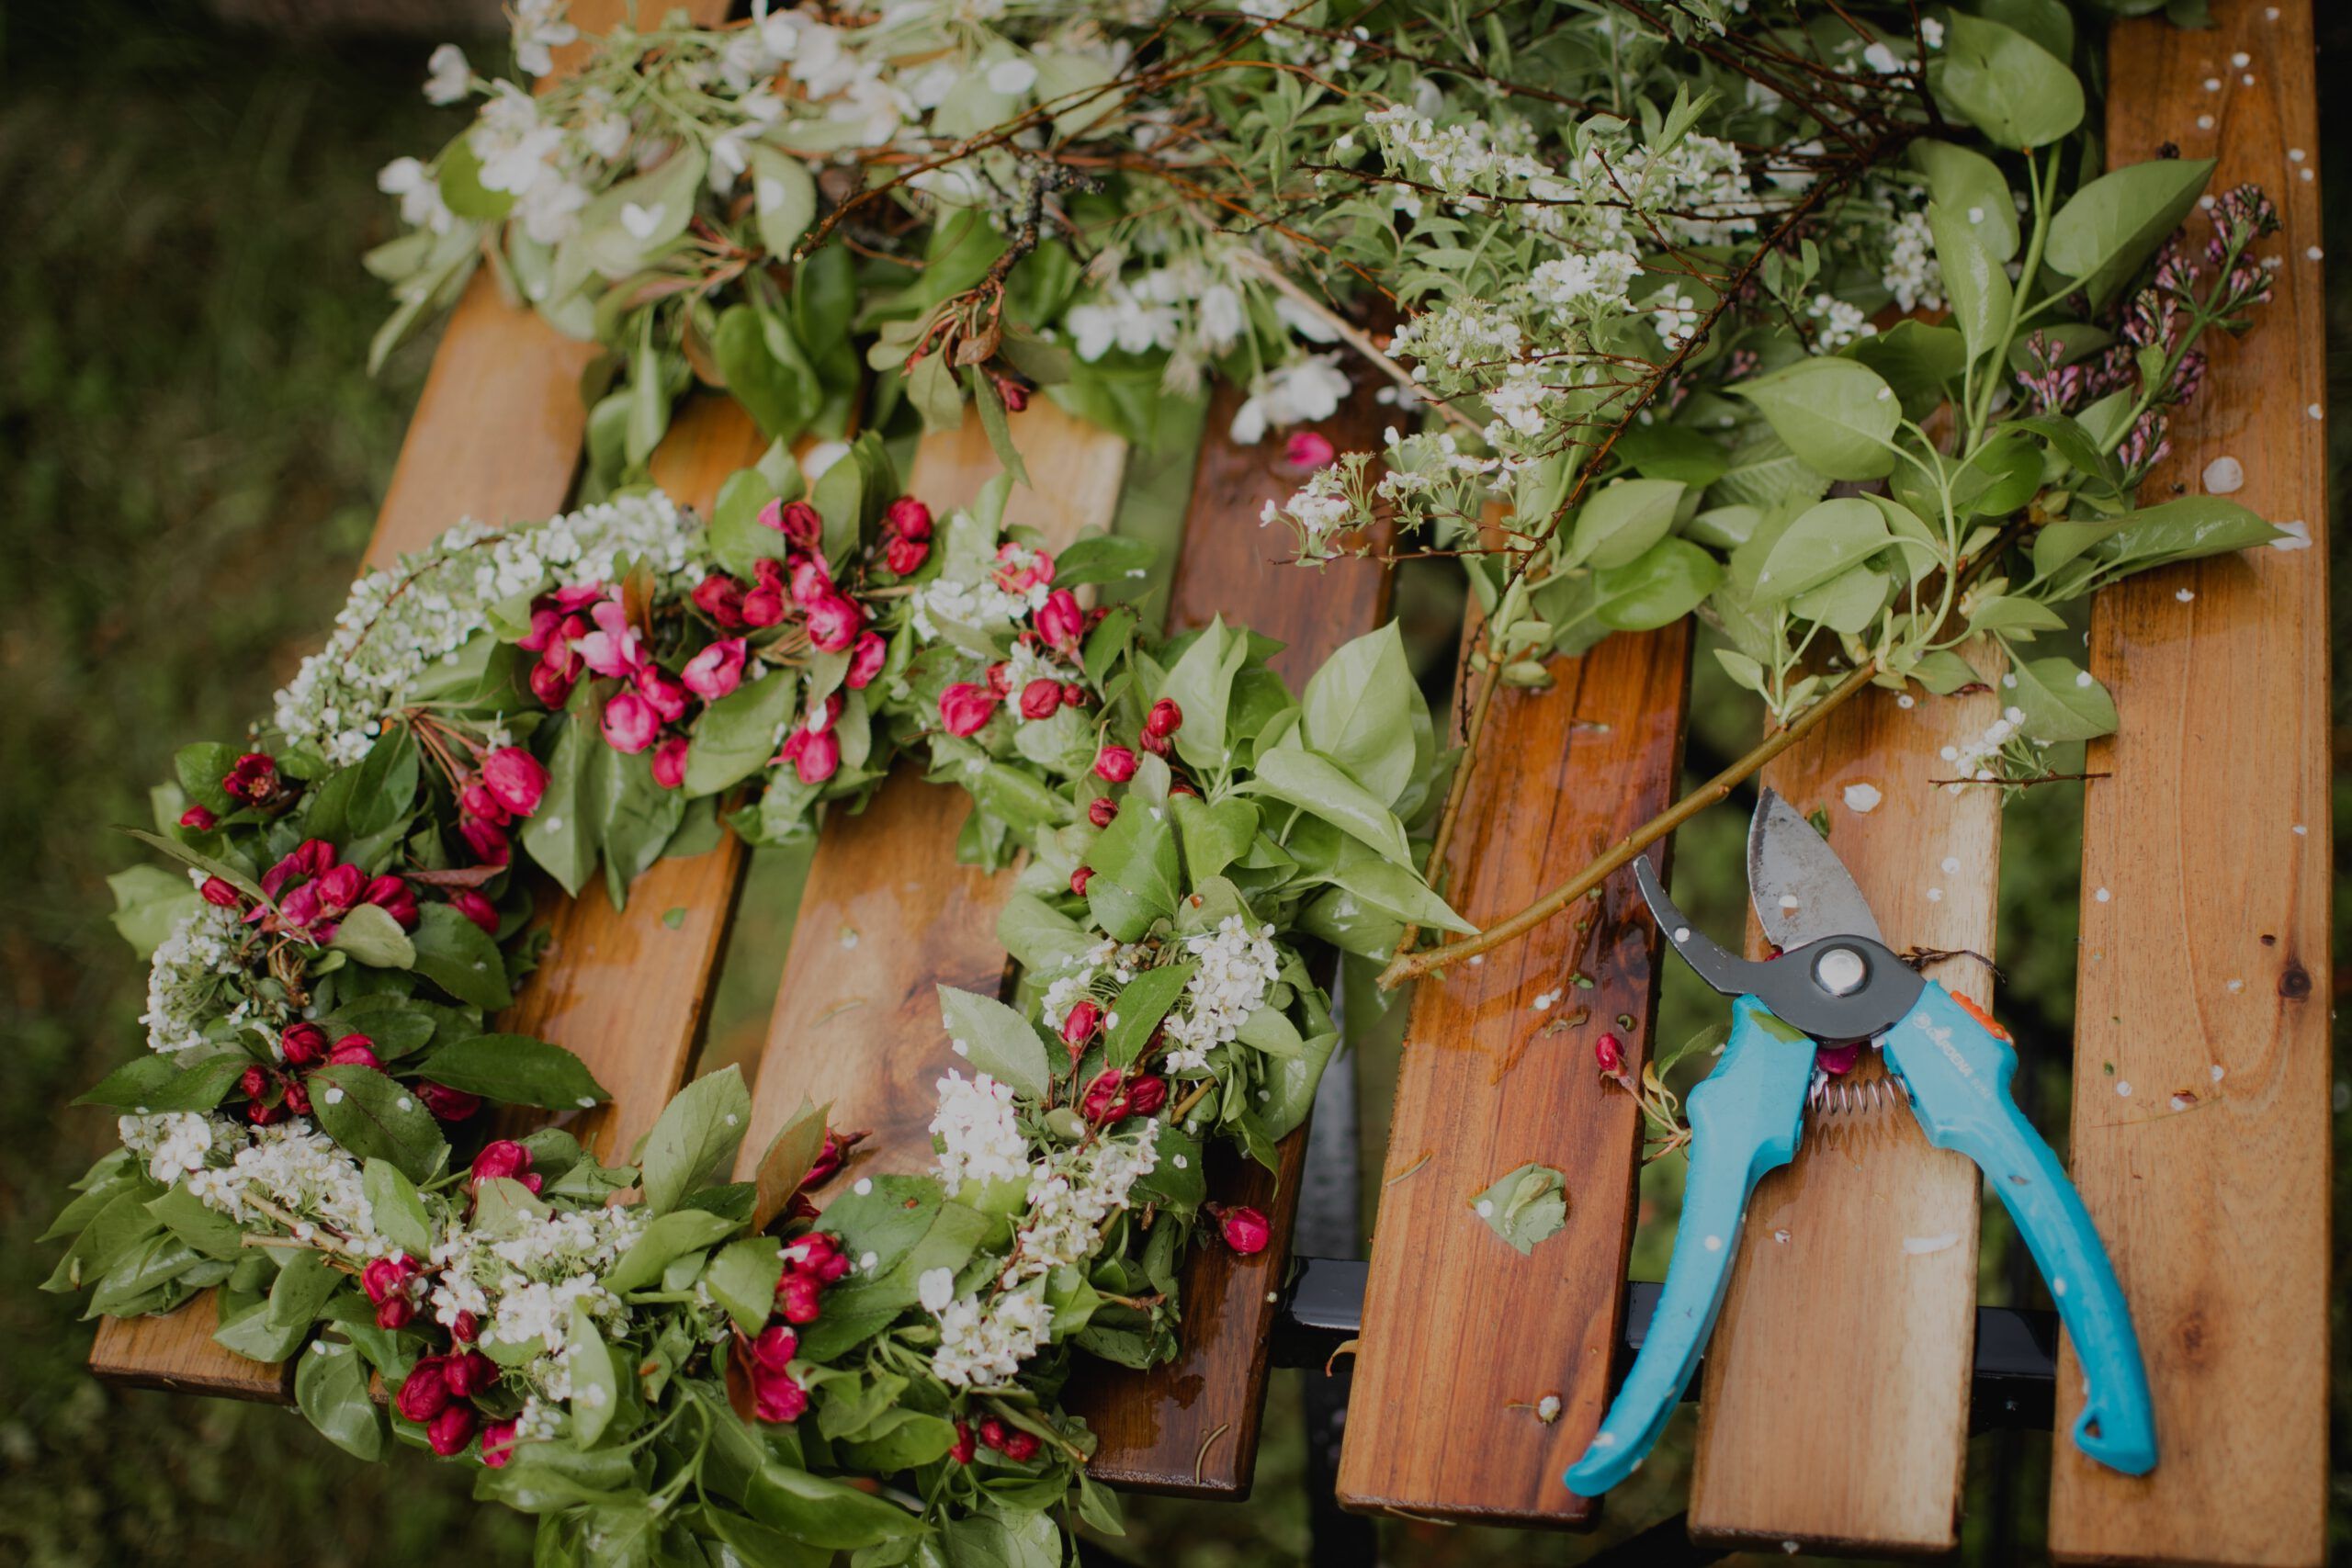 Auf dem Bild ist eine Blumenkranz auf einer Holzbank zusehen. Daneben liegt eine hellblaue Gartenschere.